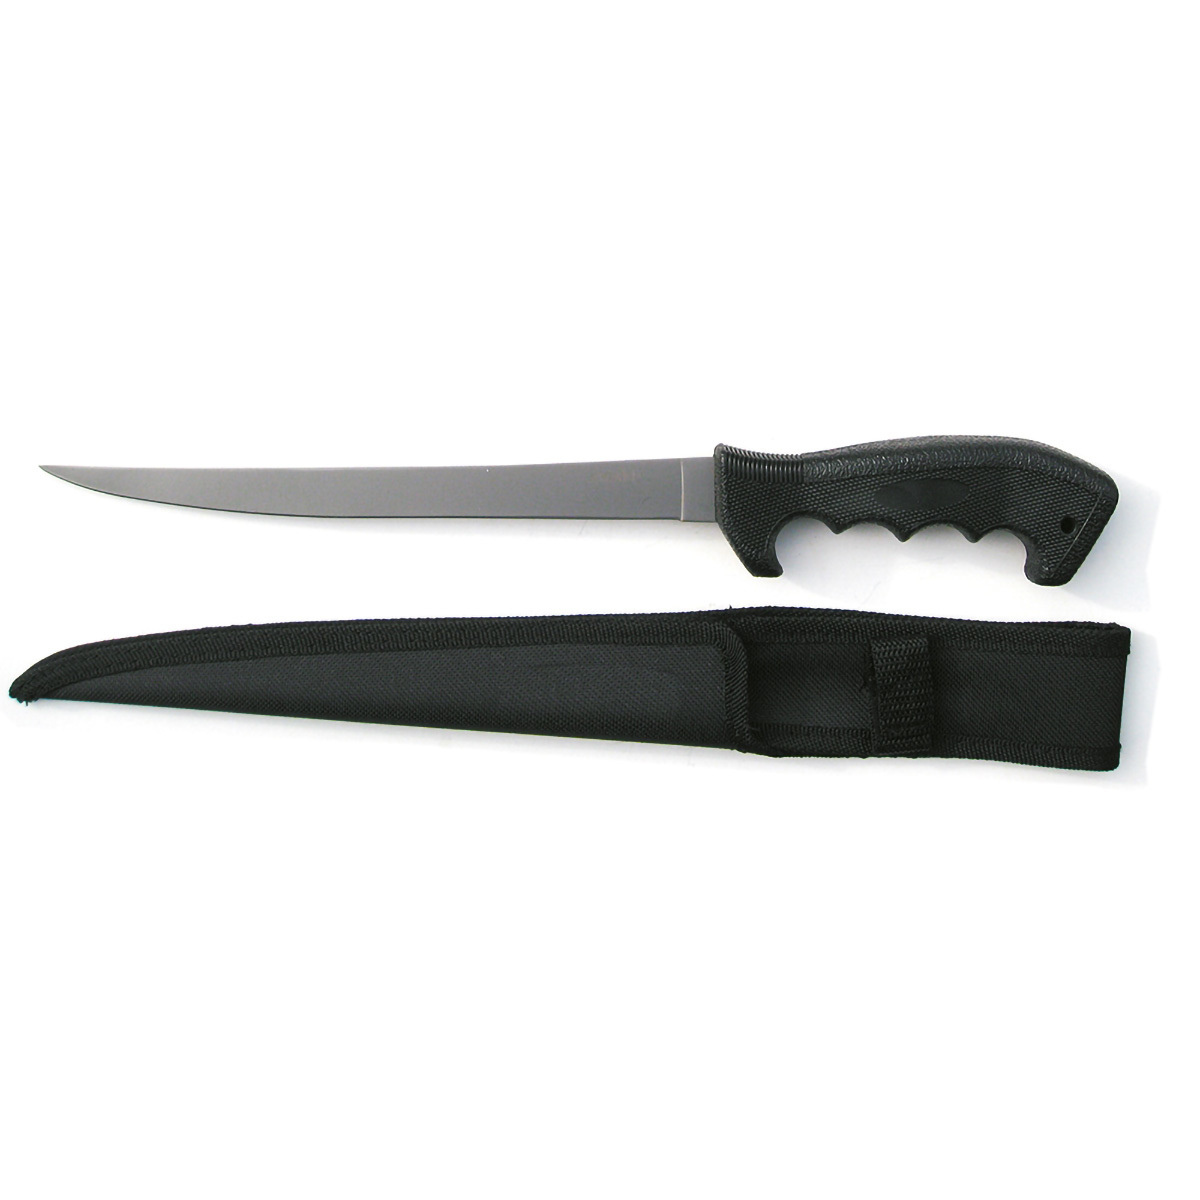 Нож филейный Ahti 9667A 230, сталь Titanium Bonded Stainless Steel, рукоять нейлон